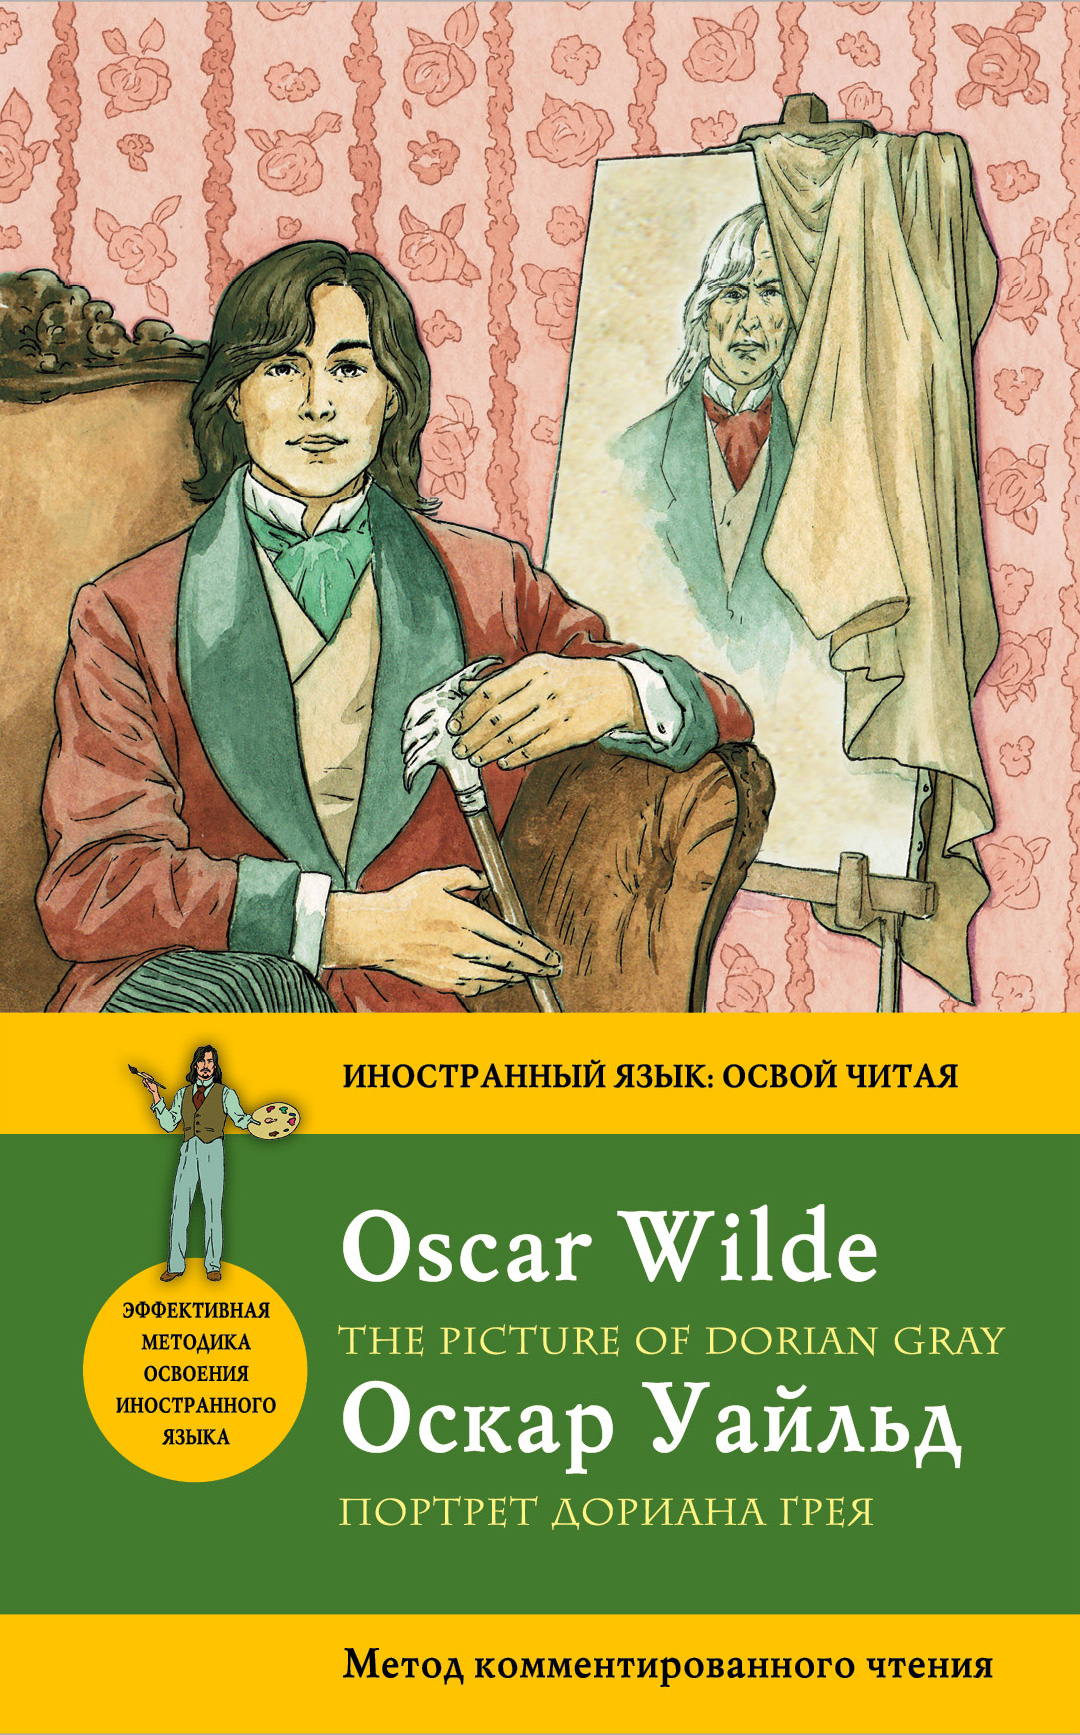 Портрет Дориана Грея= The Picture of Dorian Gray. Метод комментированного чтения. Оскар Уайльд